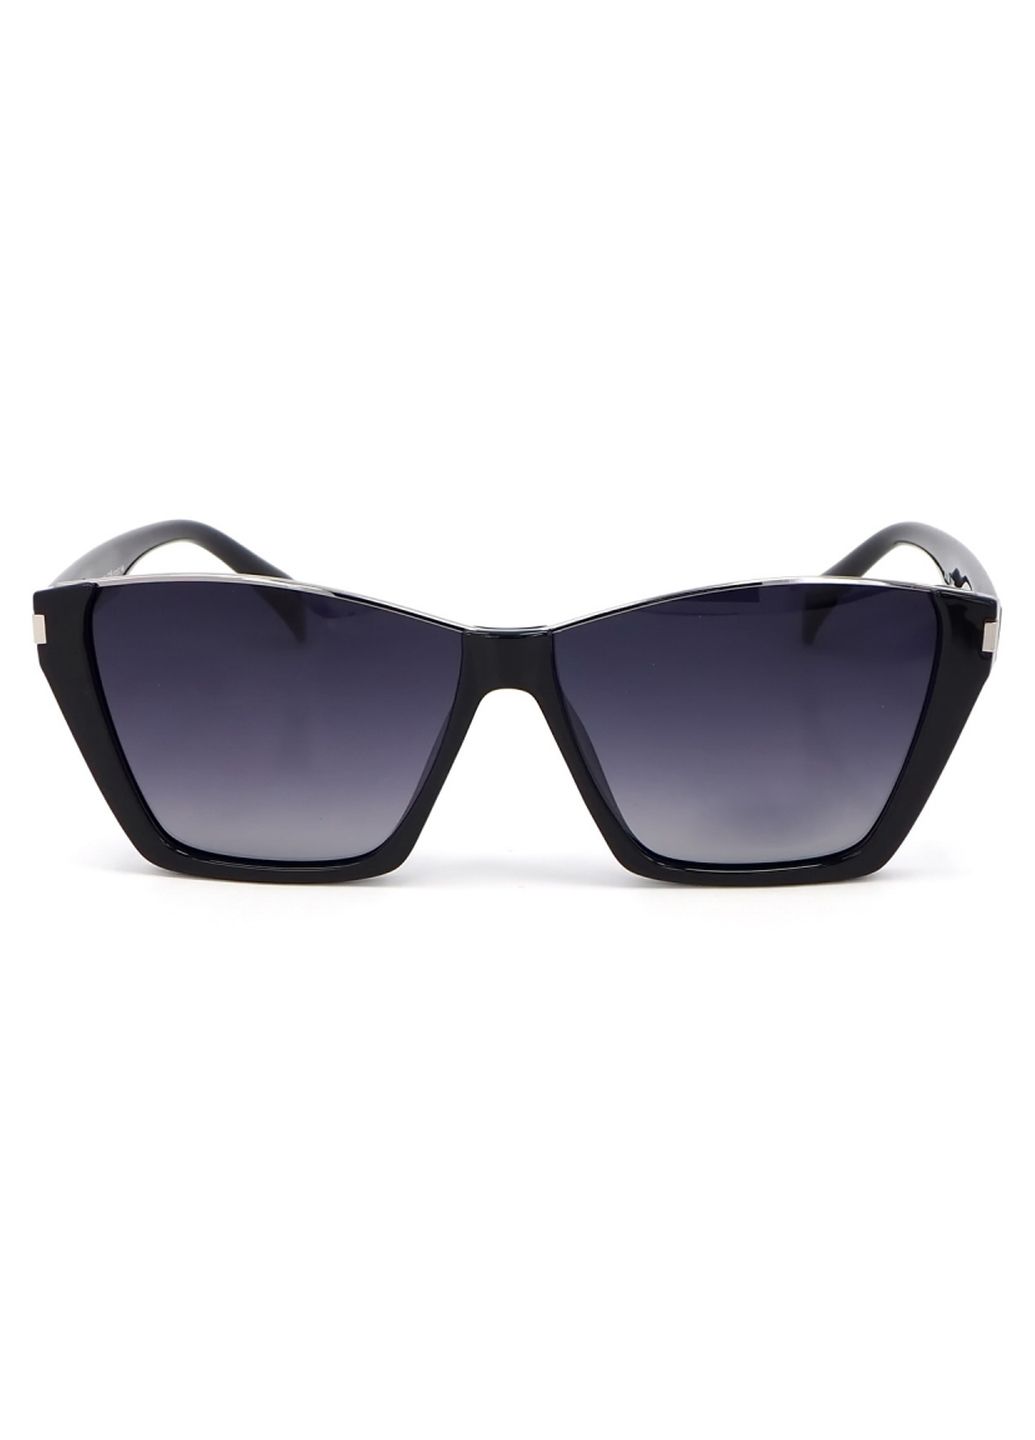 Купить Женские солнцезащитные очки Katrin Jones с поляризацией KJ0858 180037 - Черный в интернет-магазине